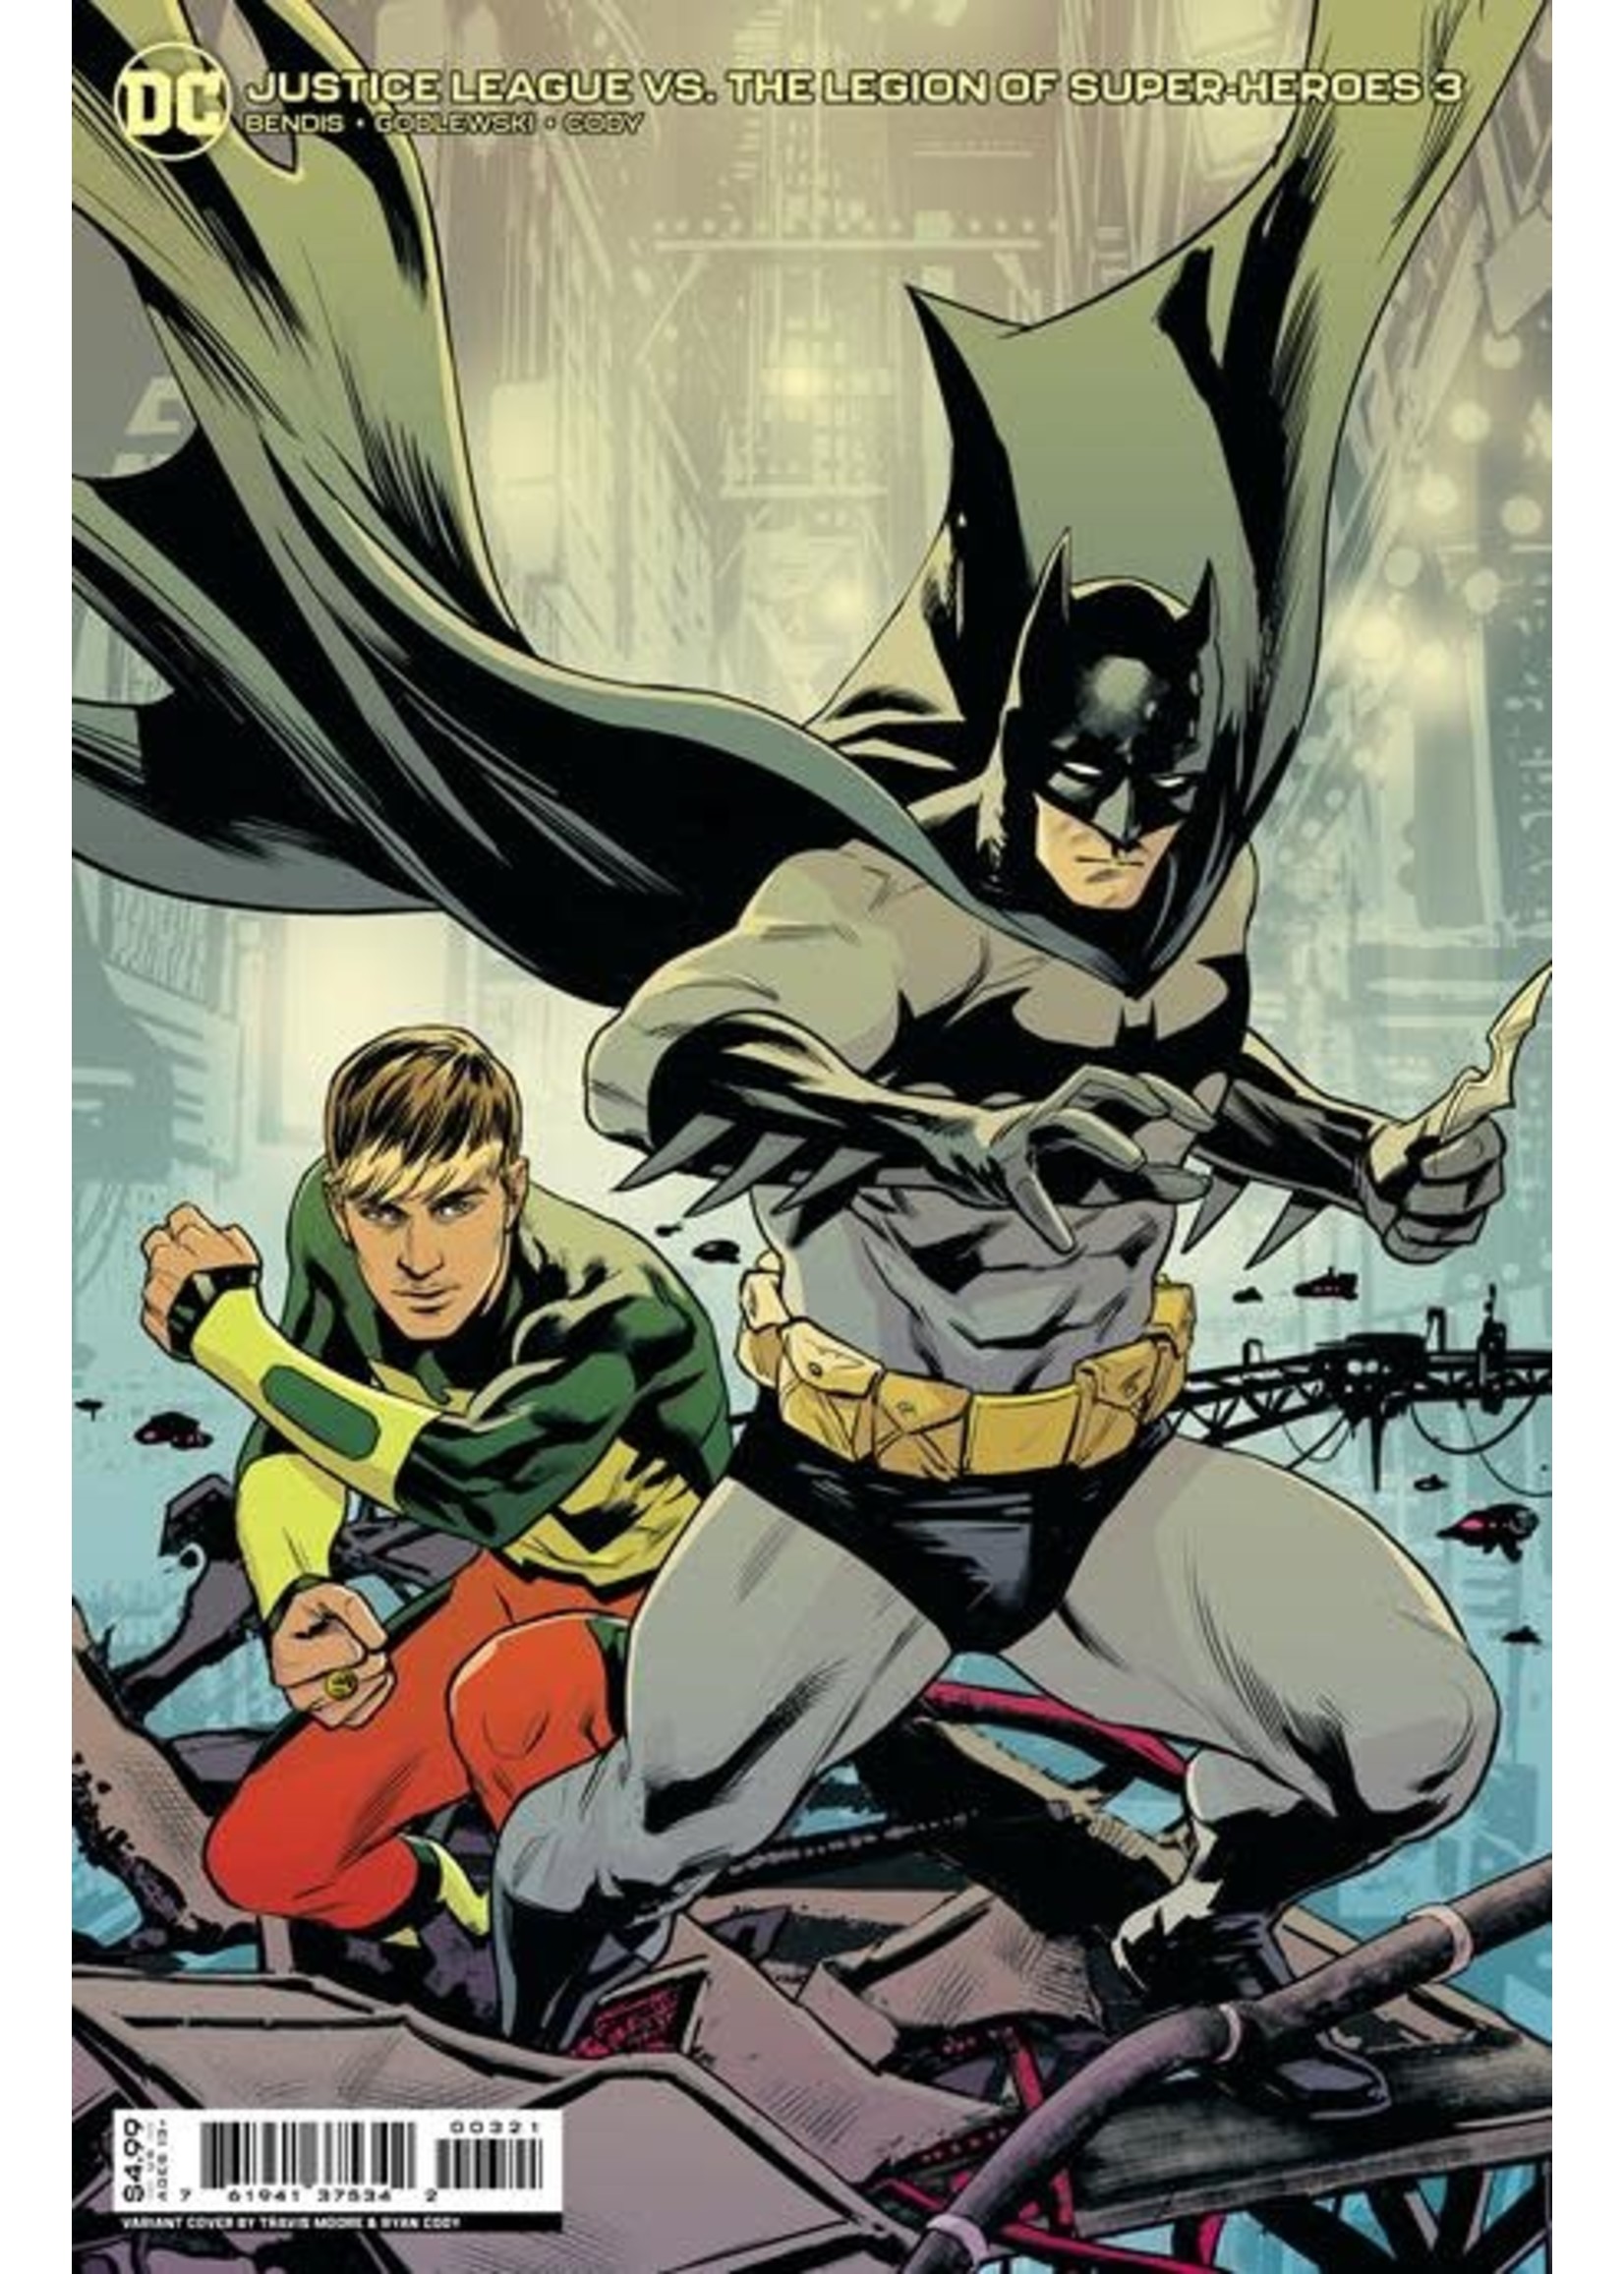 DC COMICS JUSTICE LEAGUE VS LEGION OF SUPER- HEROES #3 CVR B